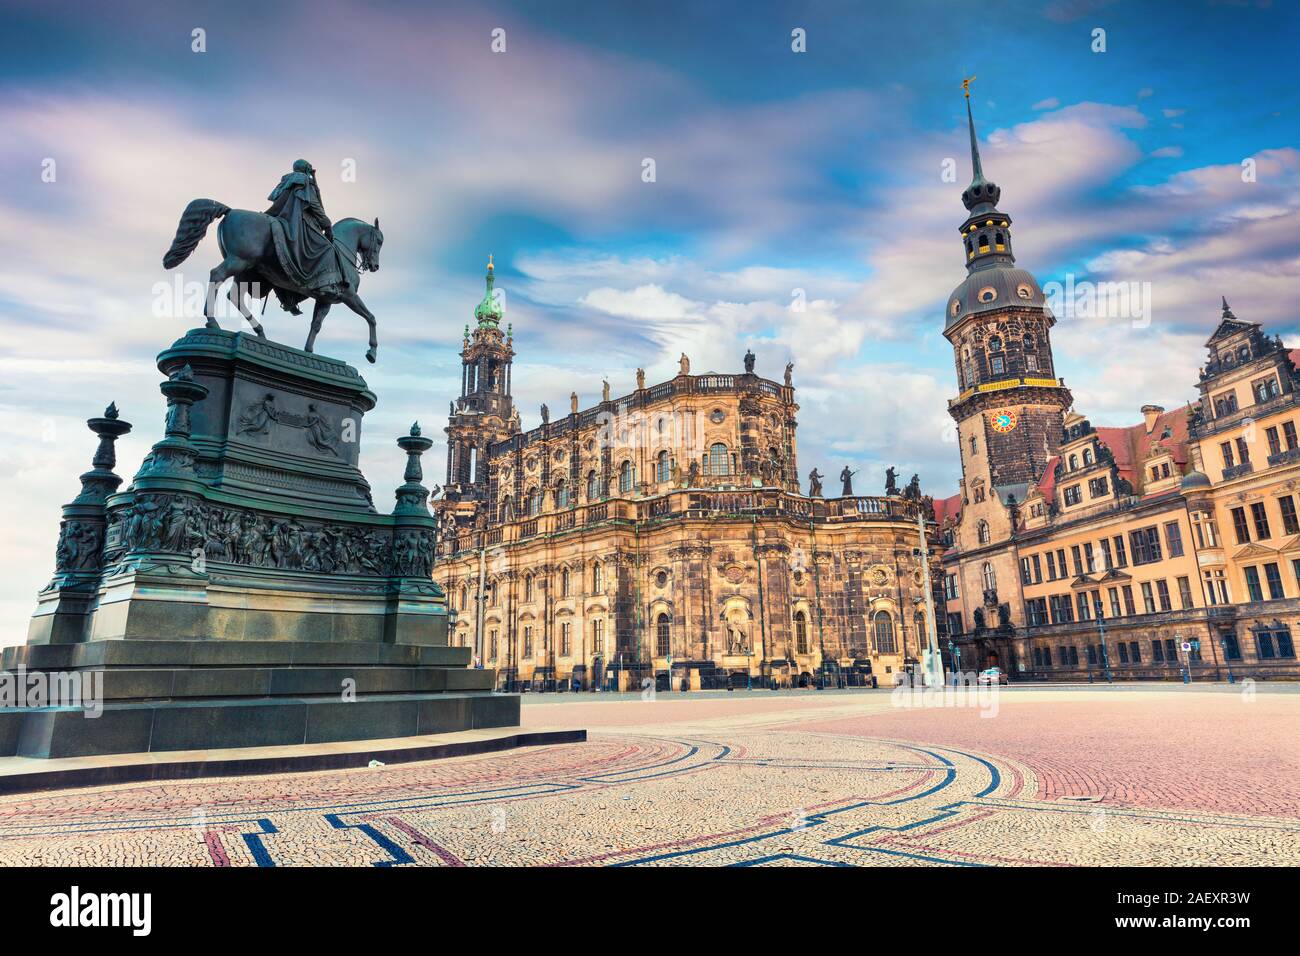 Bunte Feder Szene im Zentrum der Dresdner Altstadt, der Wohnsitz der Könige von Sachsen Dresden Schloss (Residenzschloss oder Schloss), Katholische Stockfoto